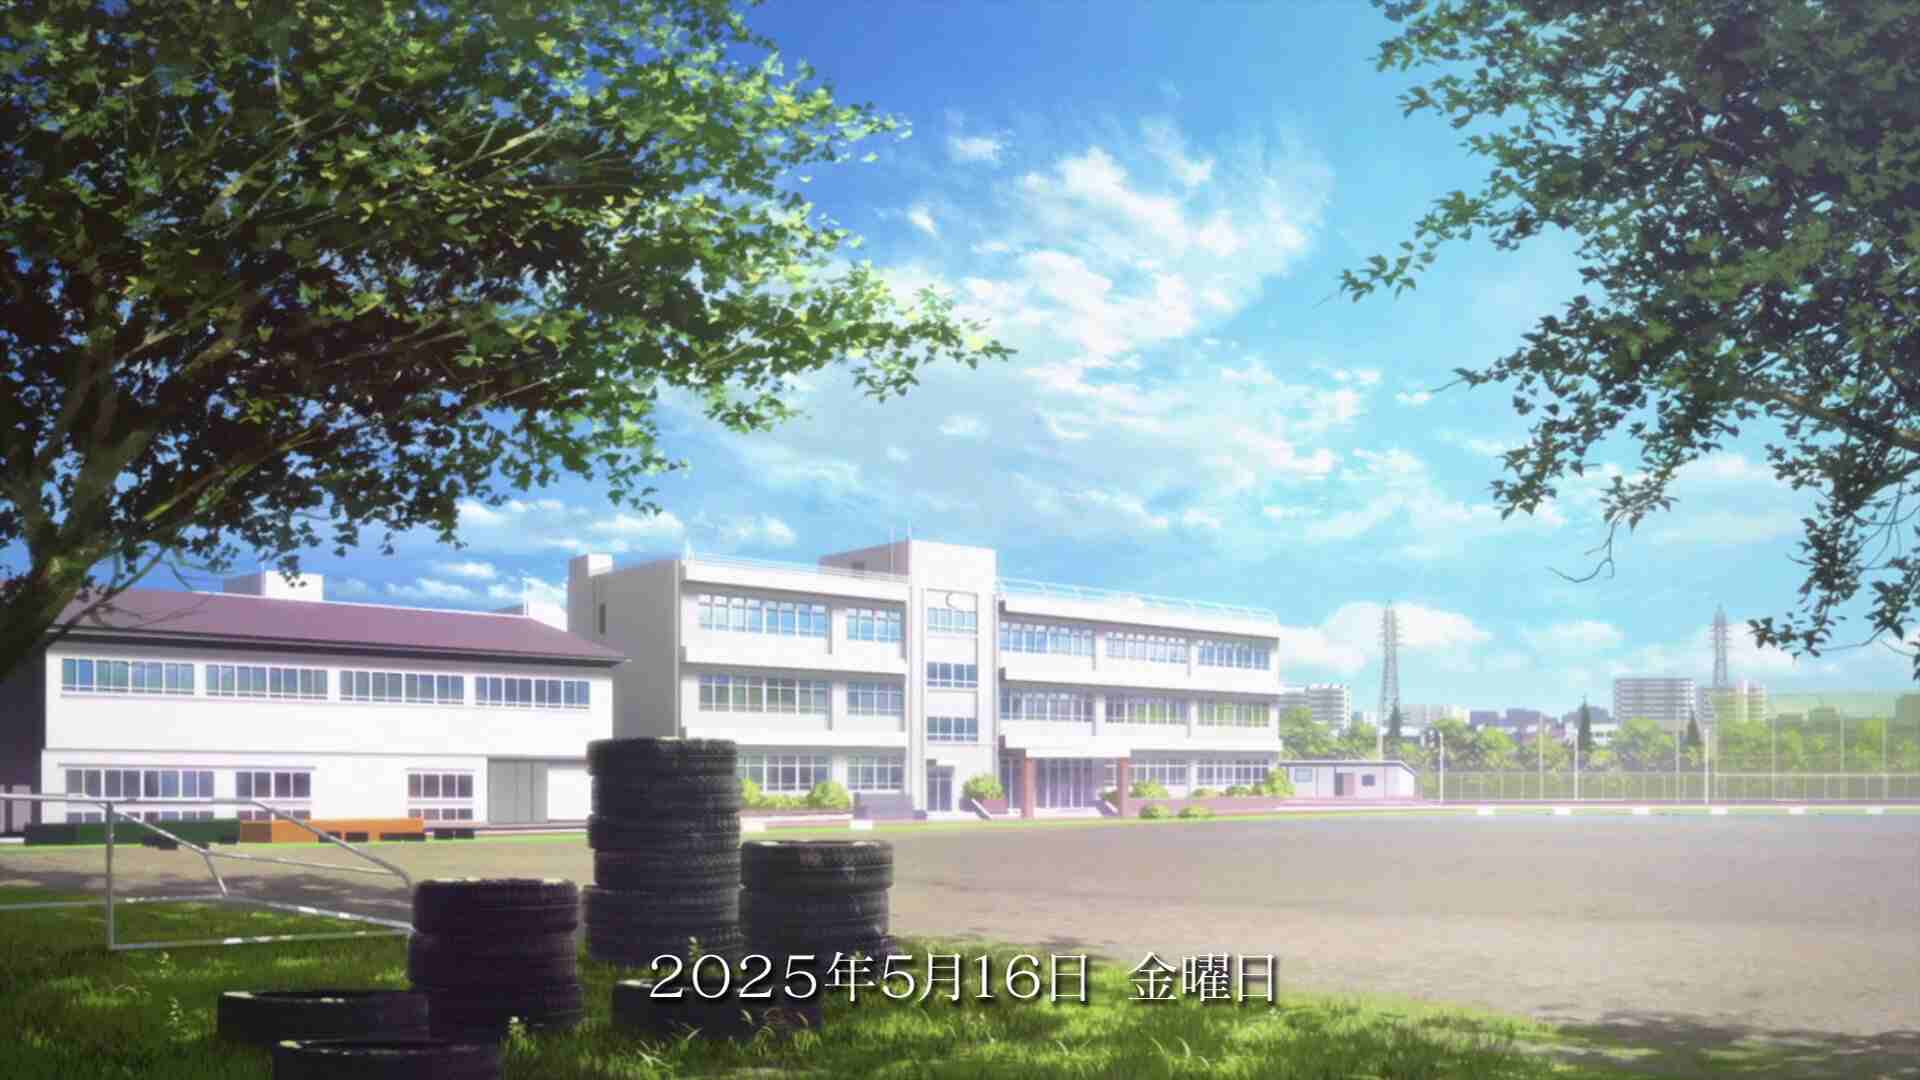 anime schools